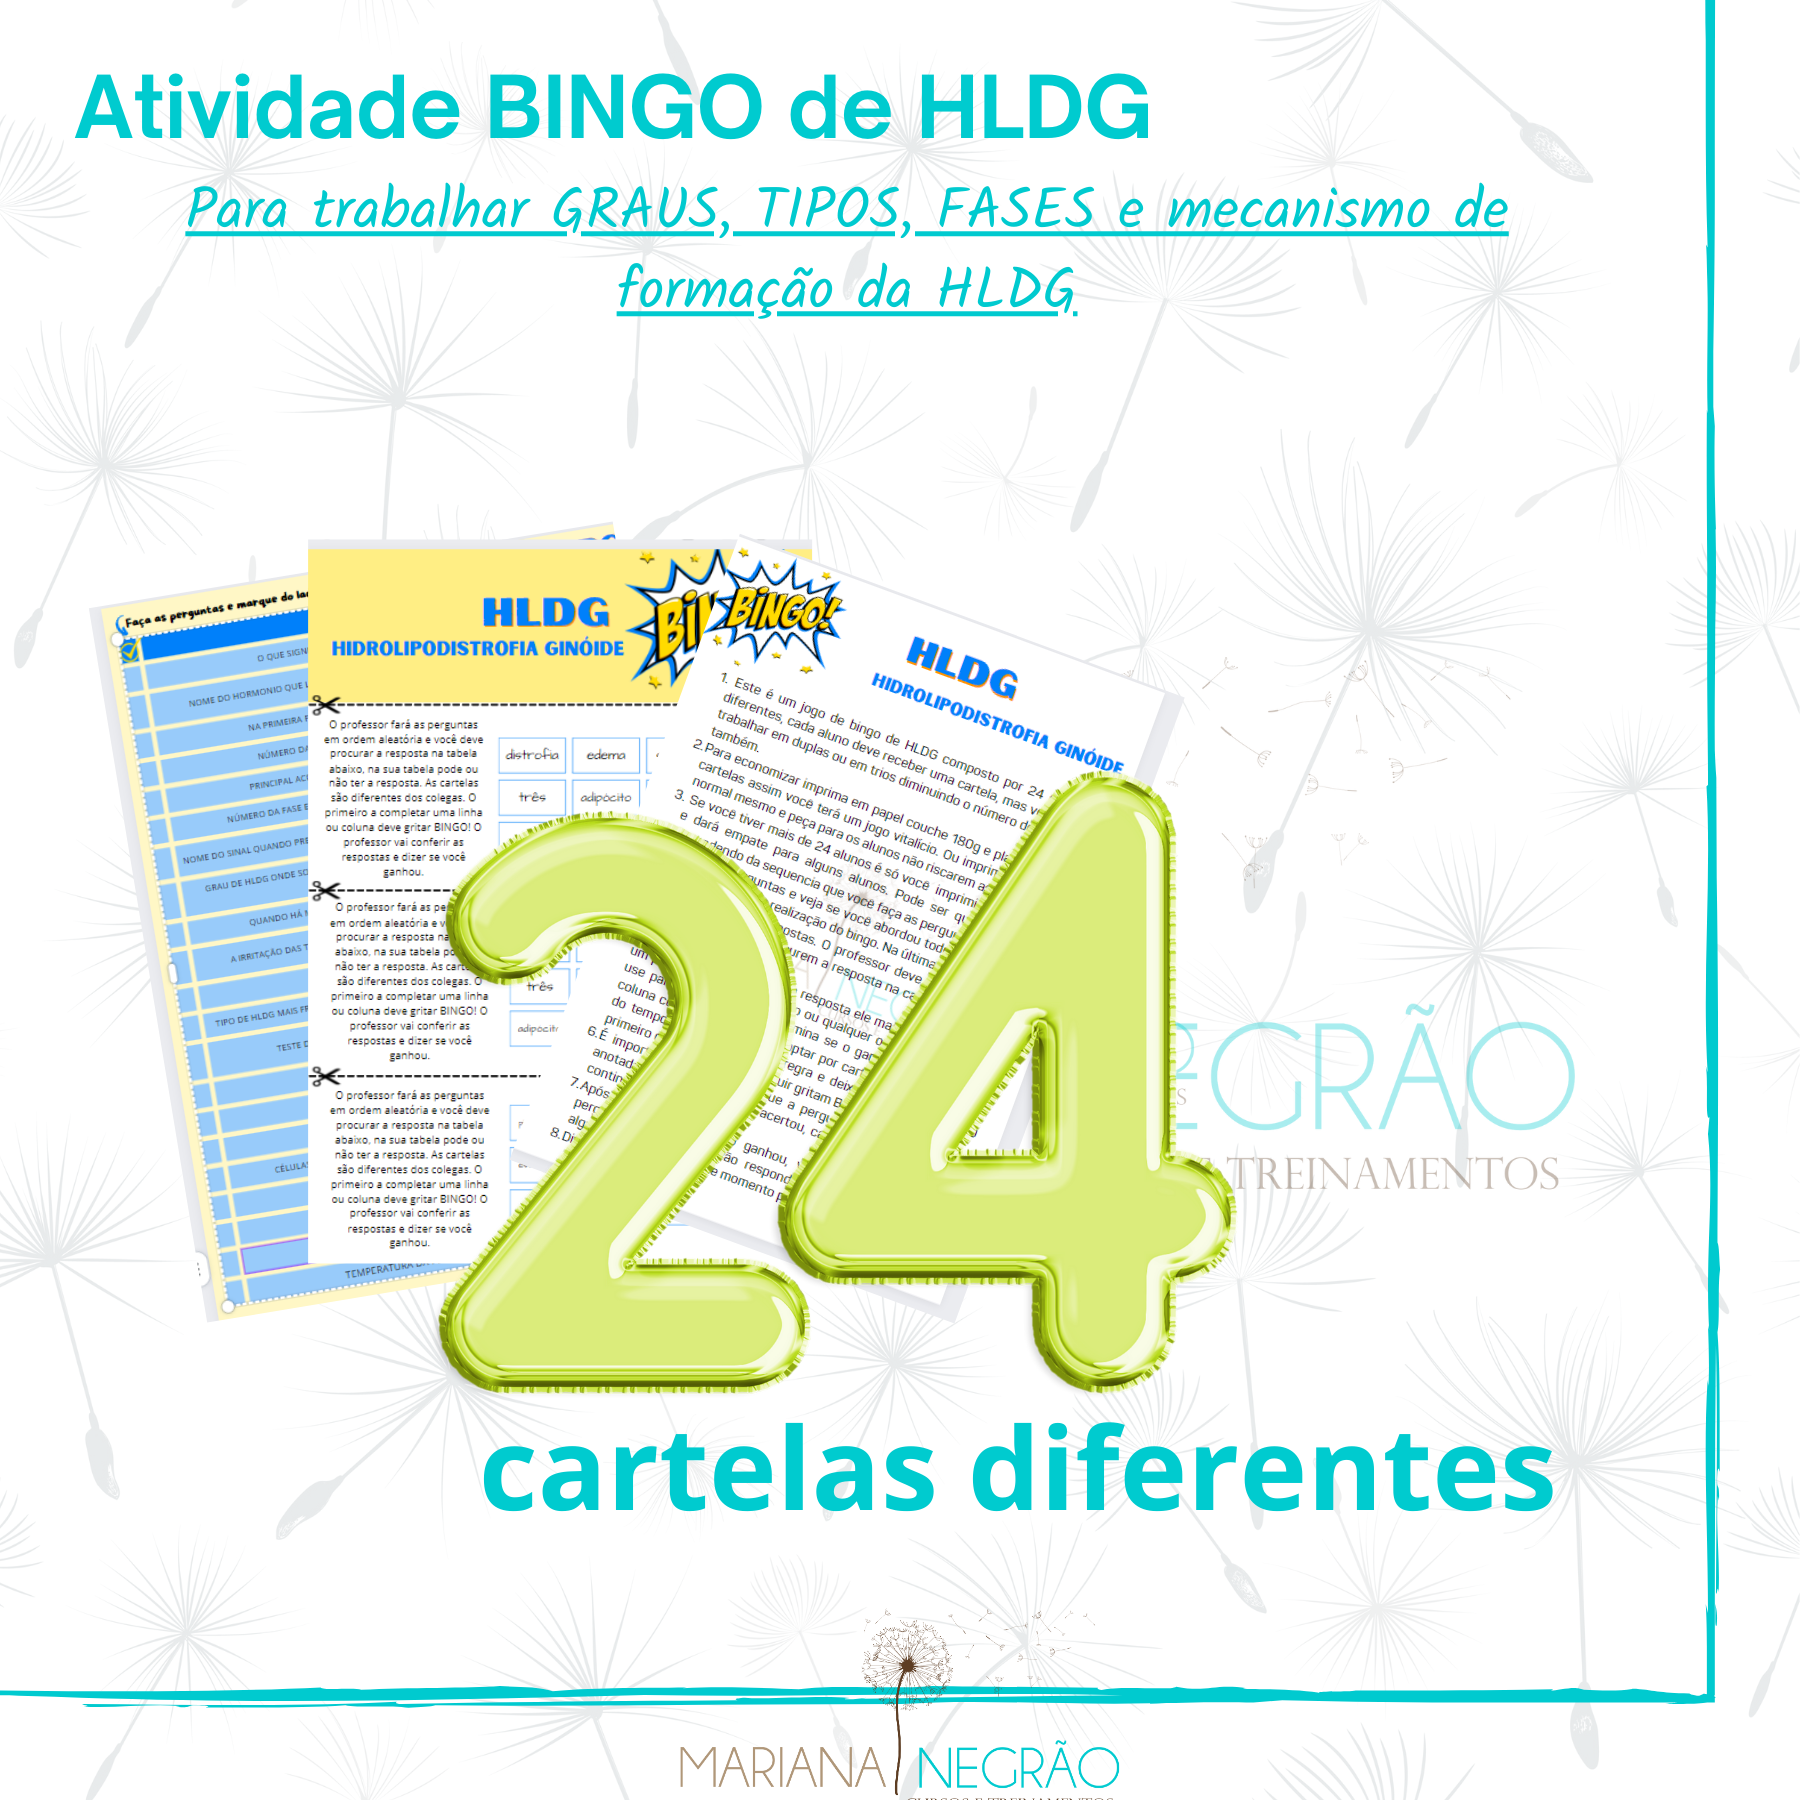 Bingo sobre HLDG - Professora Mariana Negrão